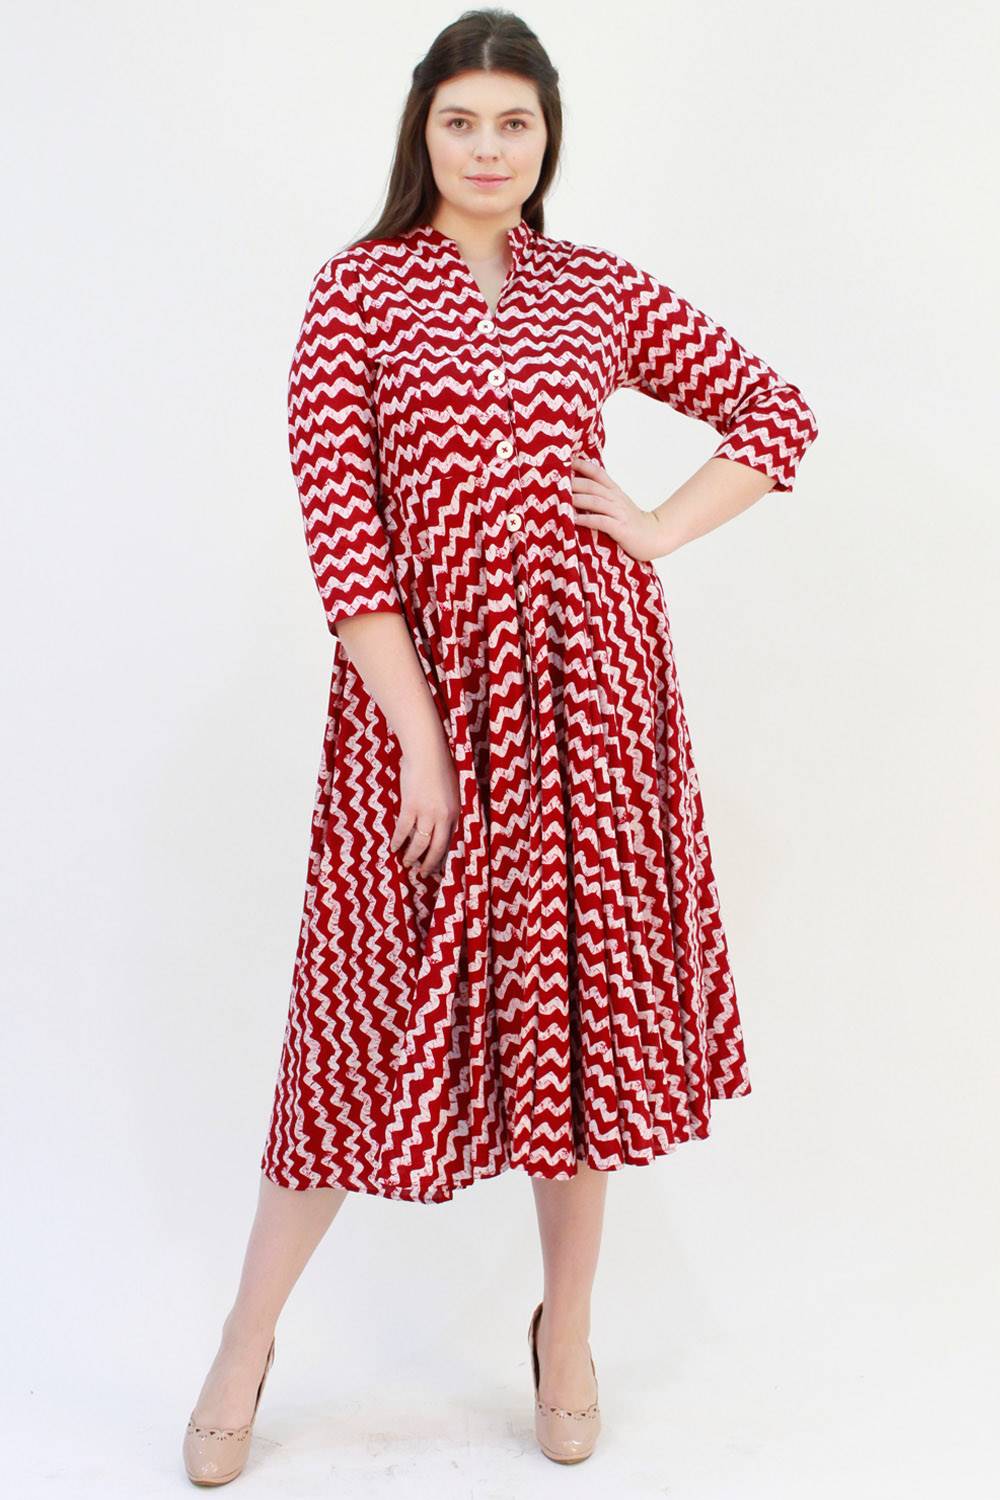 Get Batik Printed Boat Neck Maxi Dress at ₹ 1200 | LBB Shop